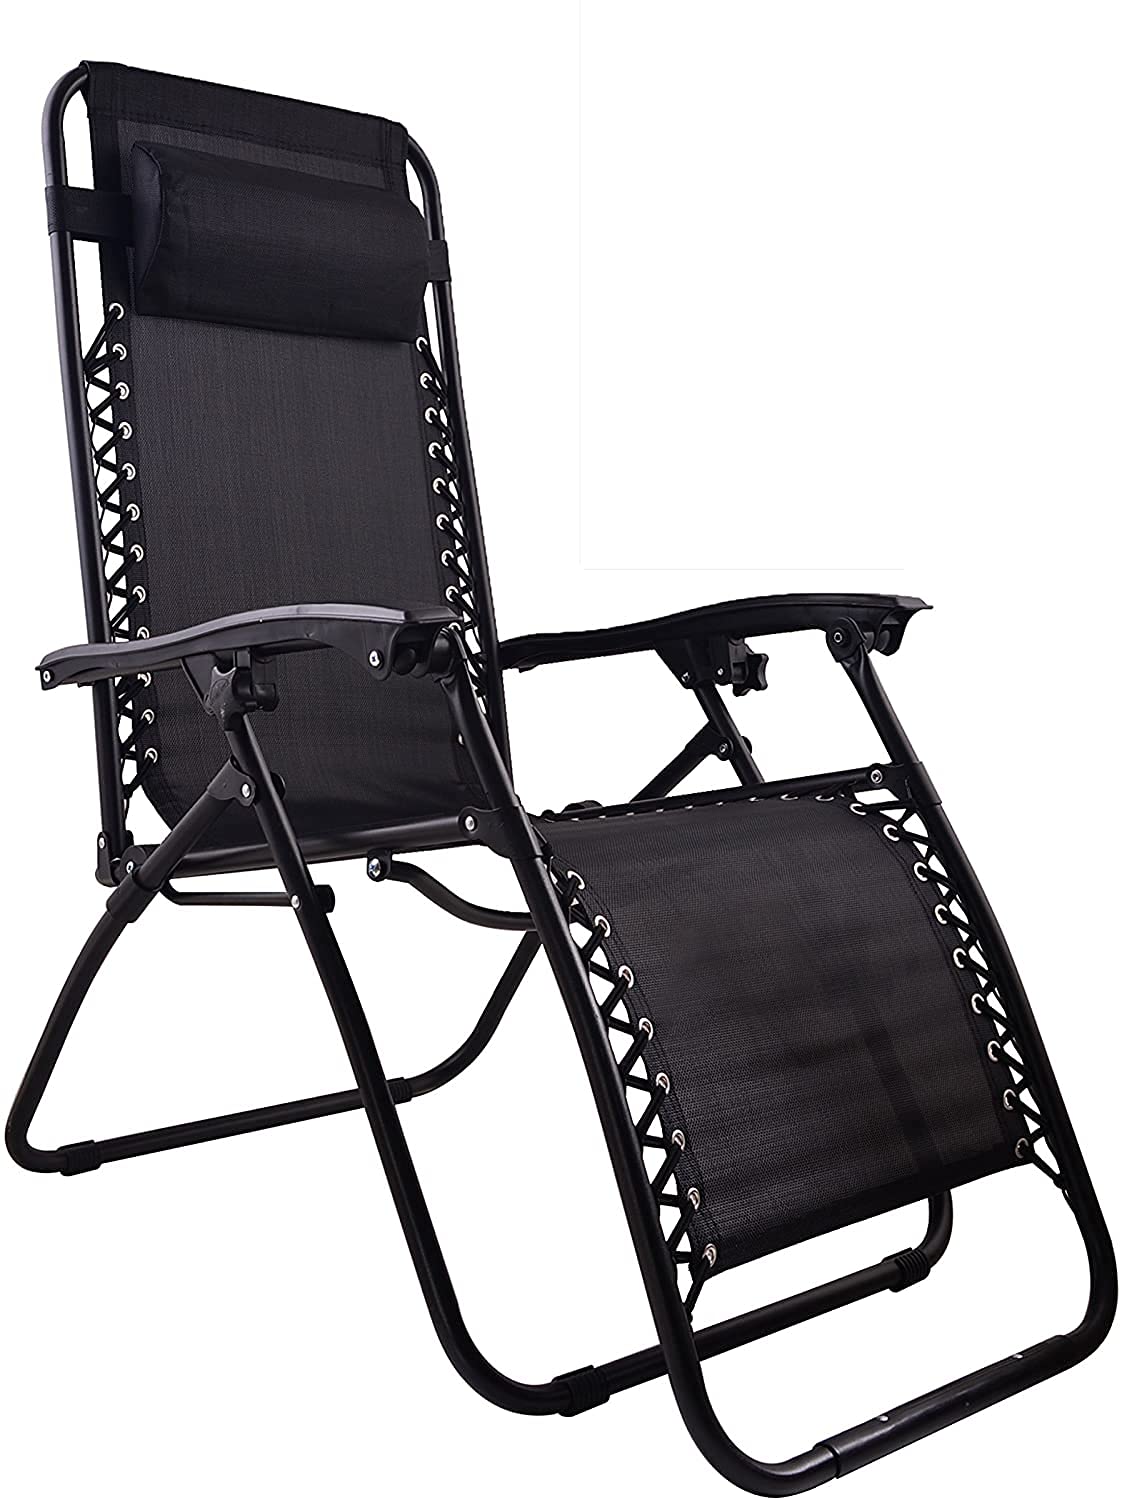 BTEXPERT CC5045B-2 Chaise Zero Gravity Lounge Outdoor Patio Beach Yard Garden avec plateau utilitaire Porte-gobelet Noir Lot de deux étuis (lot de 2 pièces), pièce deux pièces